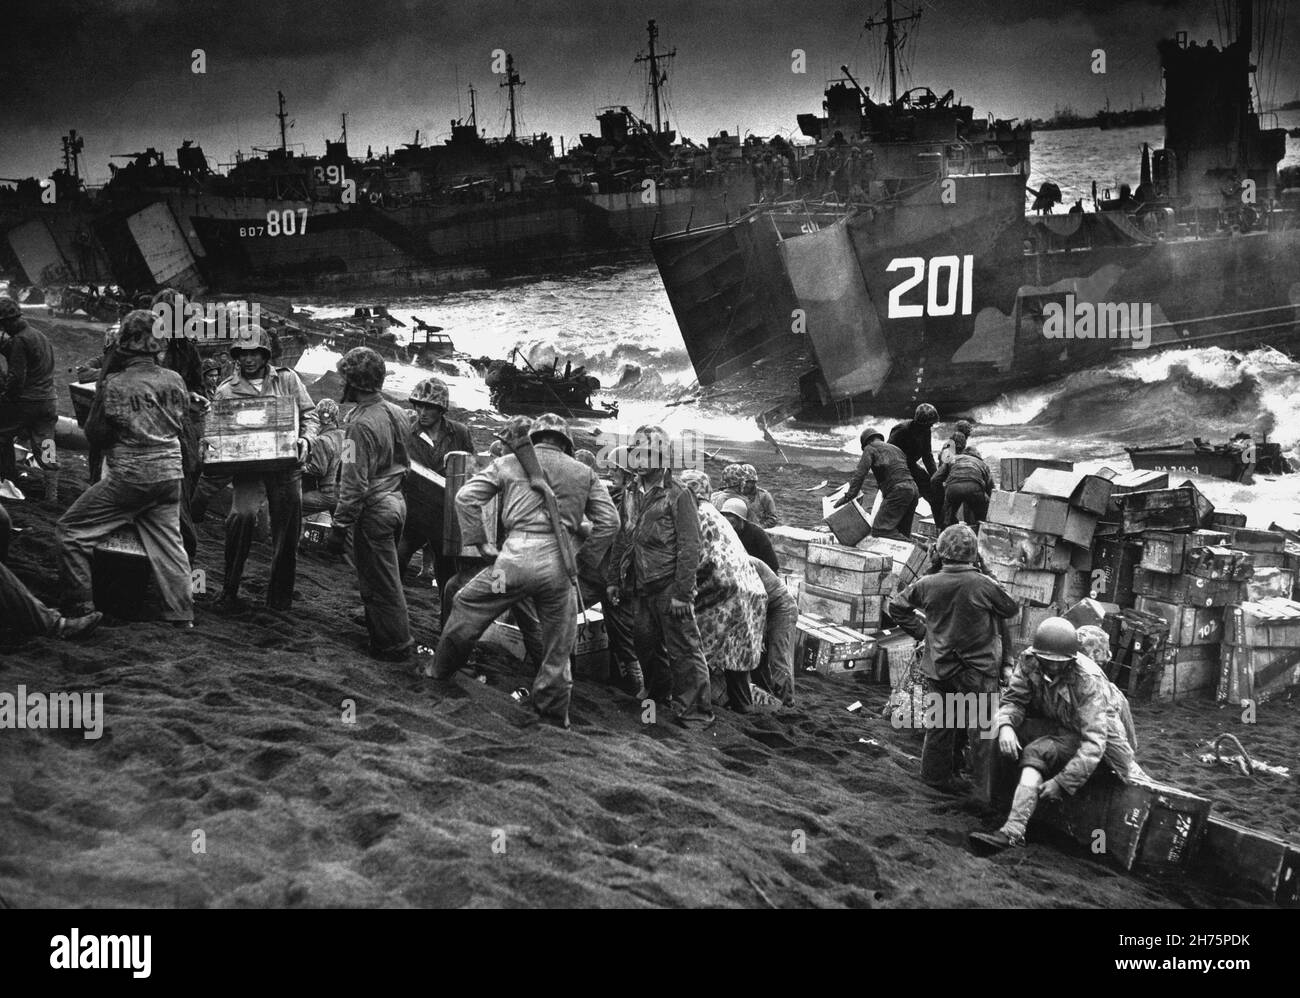 IWO JIMA, OCÉAN PACIFIQUE - 19 février 1945 - des bouches béantes de la Garde côtière américaine et de l'US Navy Landing Craft, a augmenté le grand flux de l'invasion sup Banque D'Images